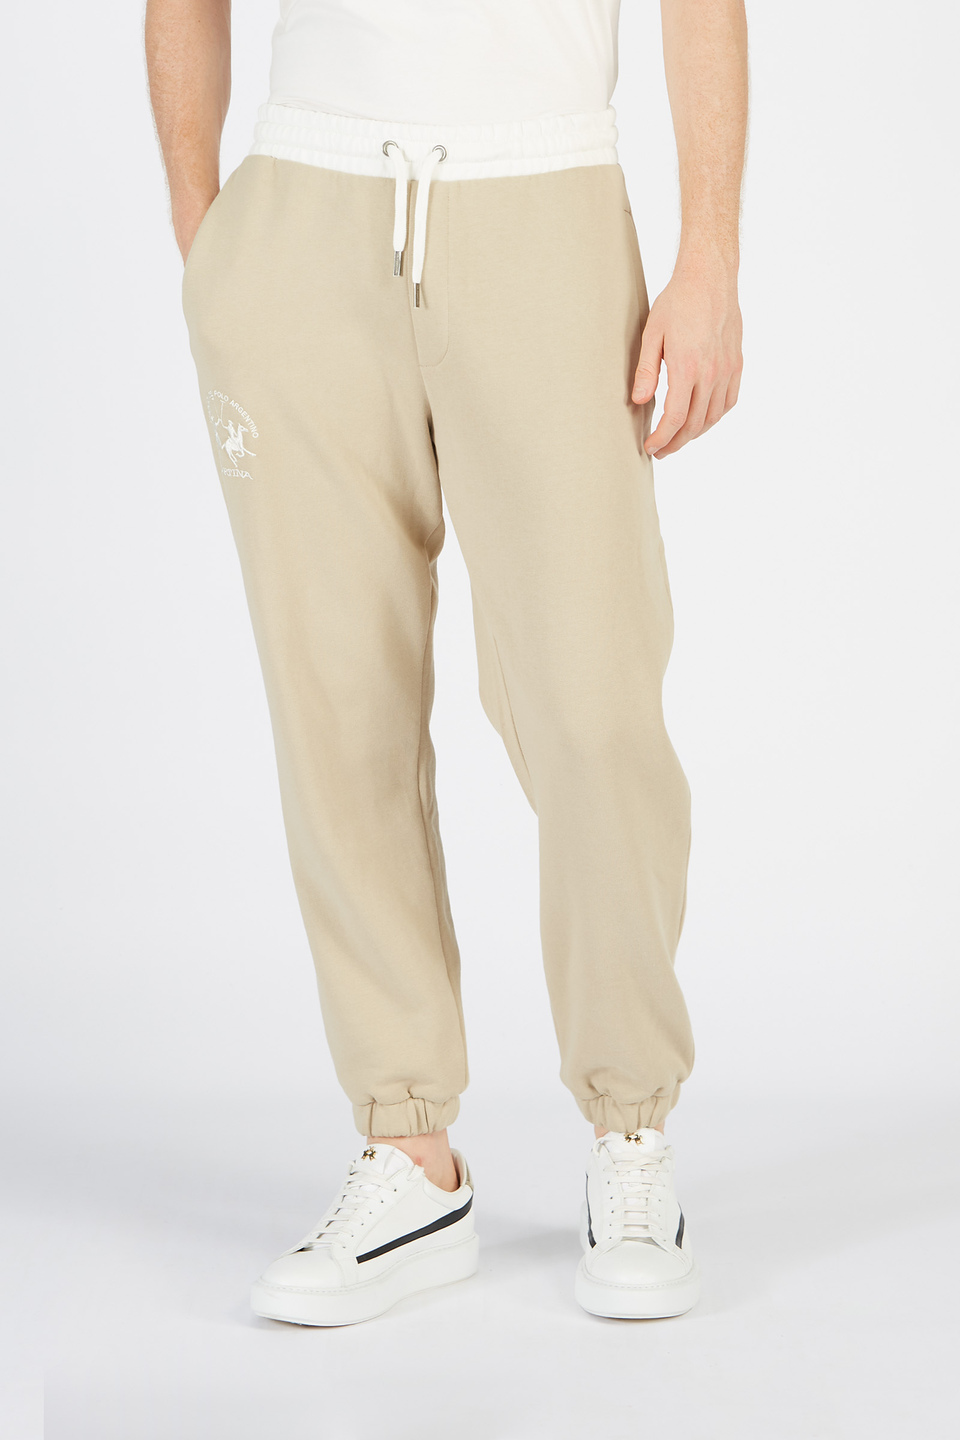 Pantalone da uomo modello jogger in cotone comfort fit | La Martina - Official Online Shop